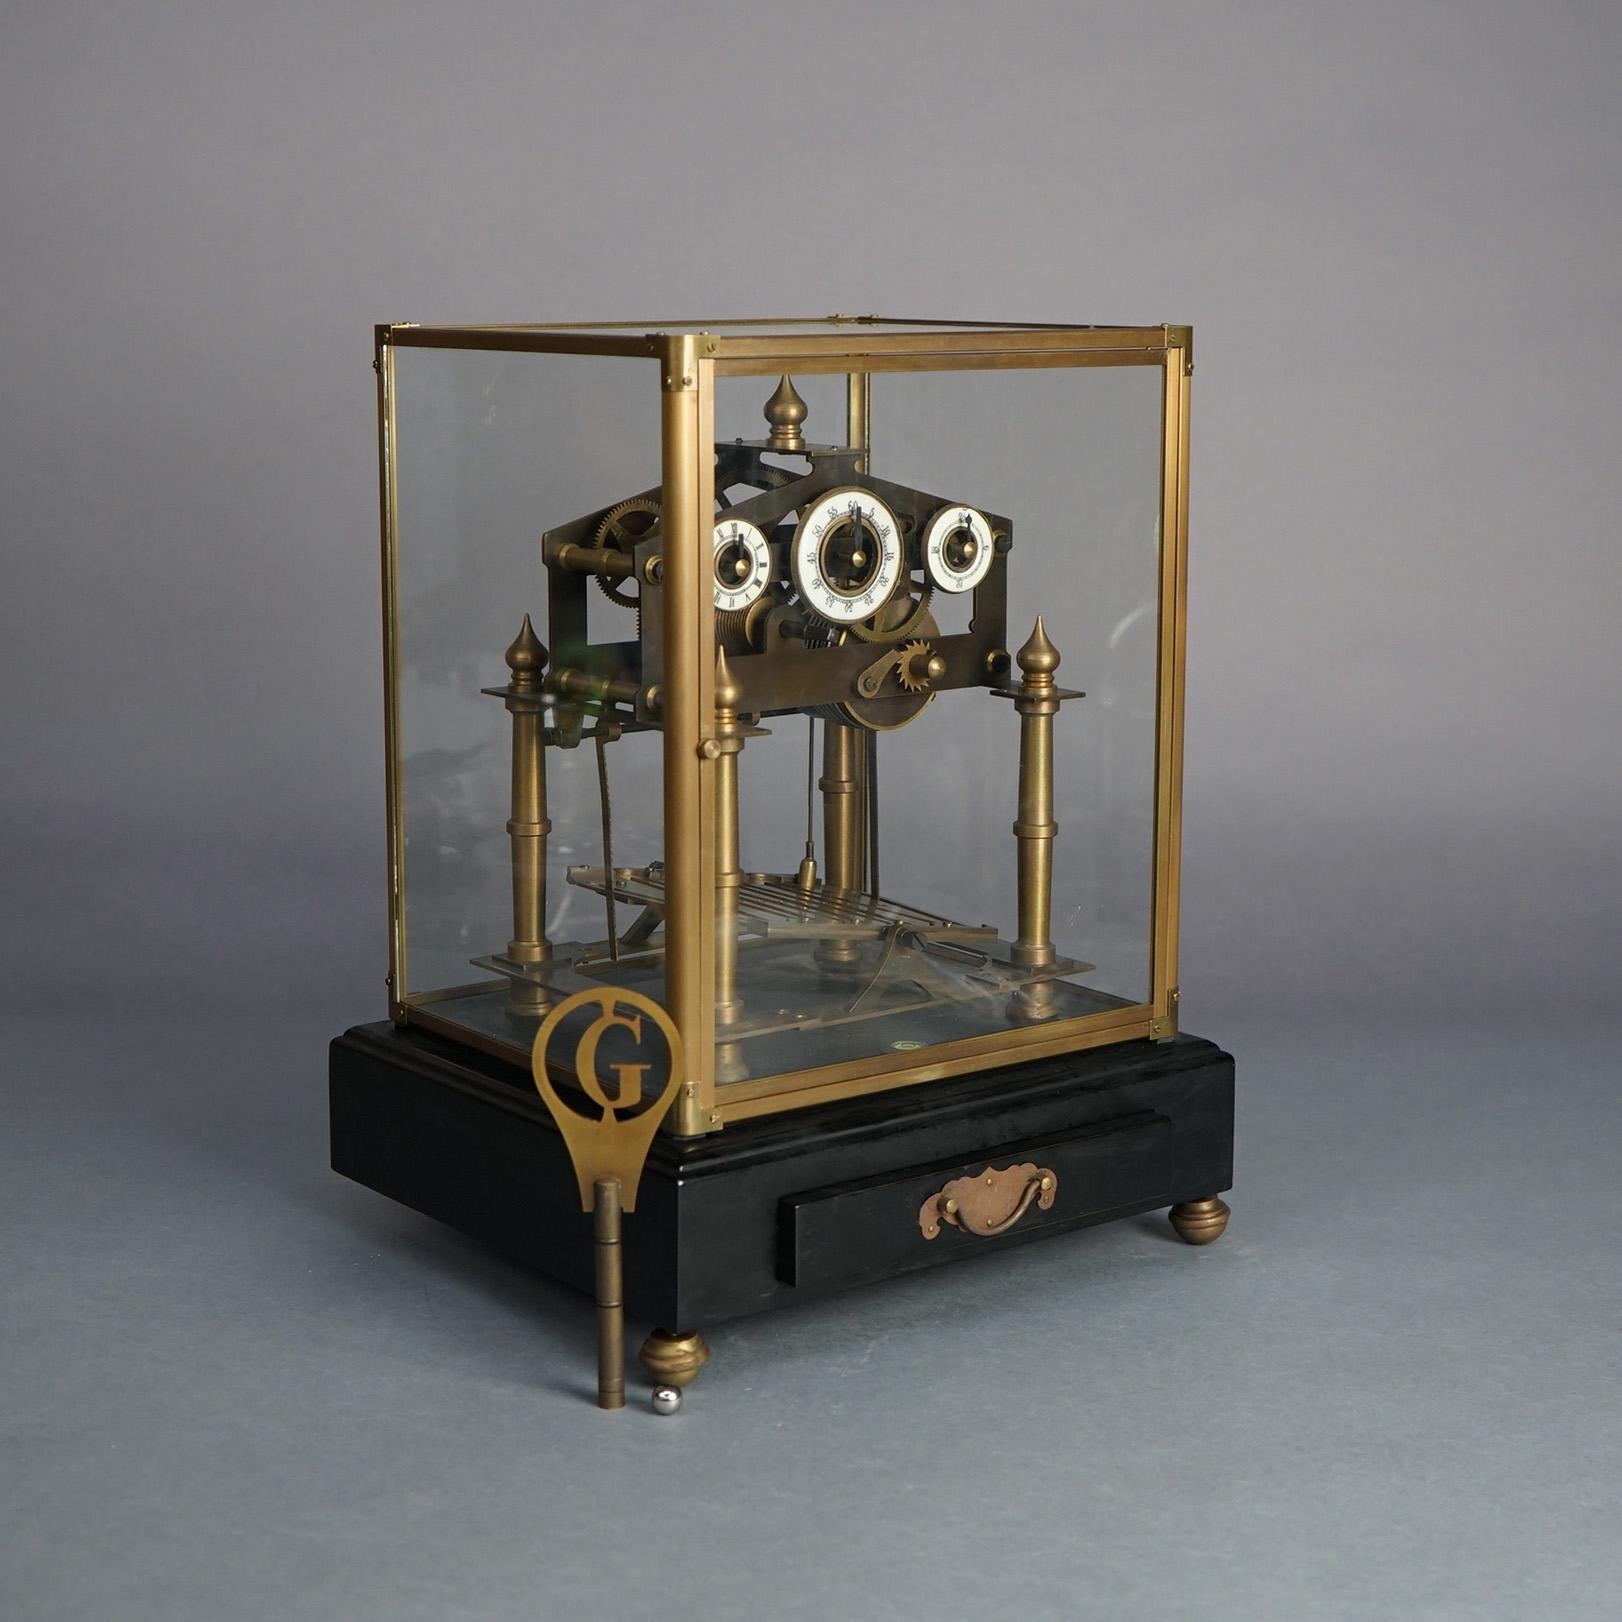 Antiquité française Congreve Rolling Ball Skeleton Clock 19thC

Dimensions : 16''H x 12.5''W x 11.75''D